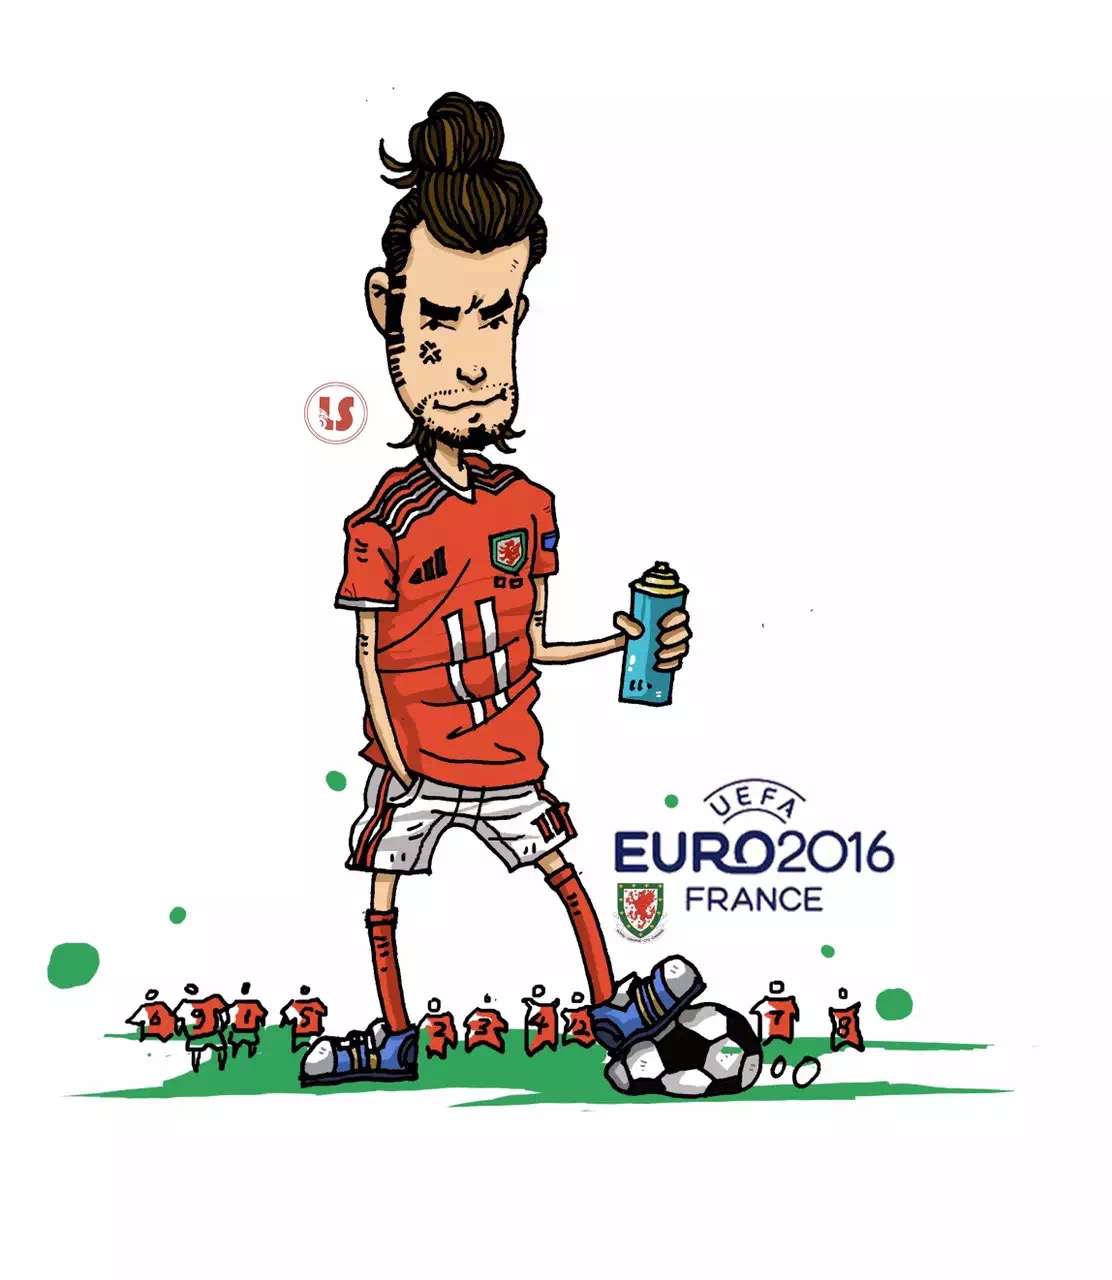 足球明星漫画 卡通图片